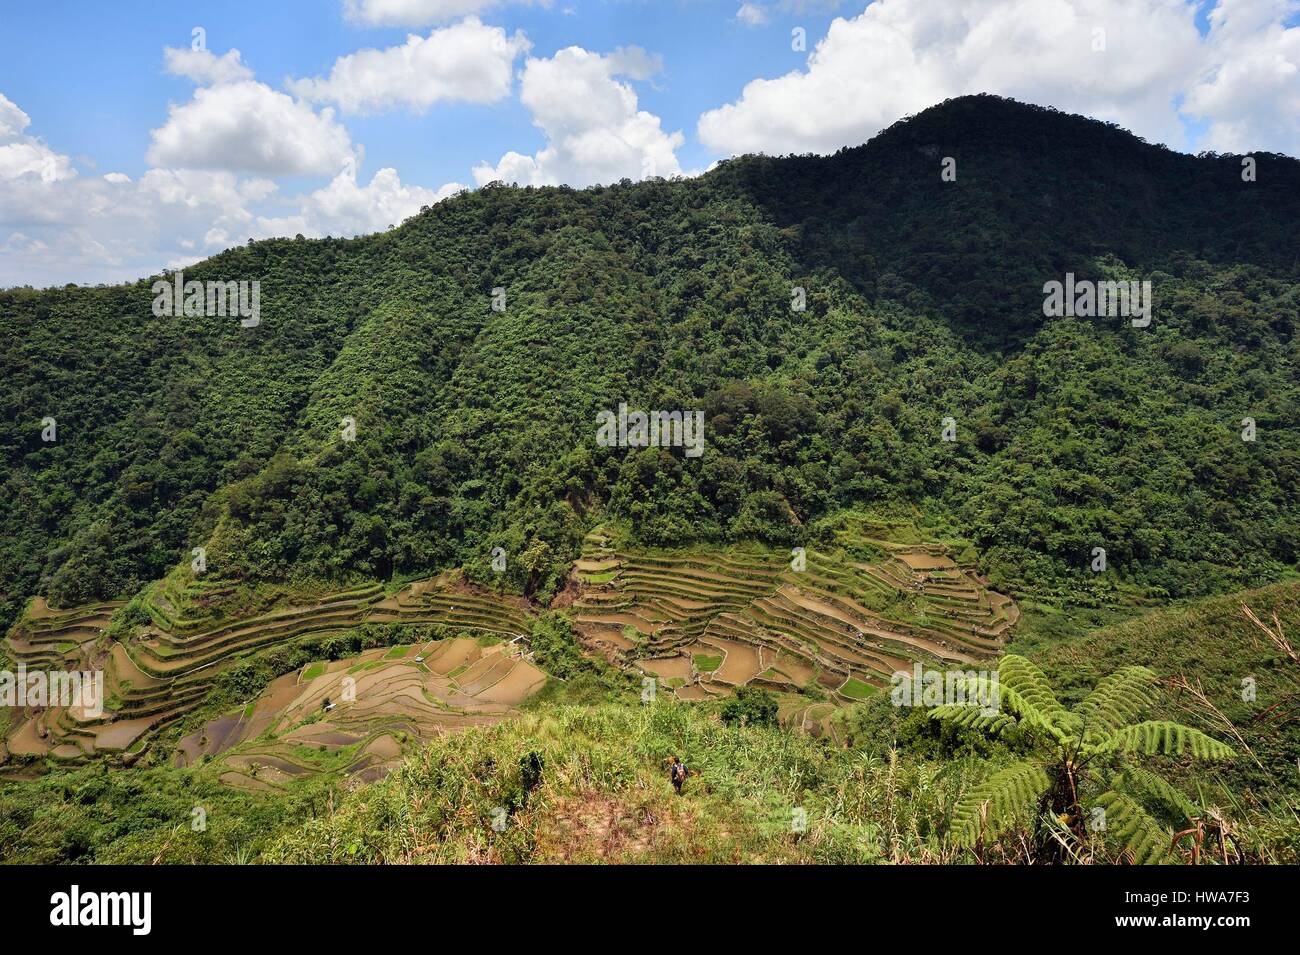 Filippine, Ifugao provincia, Banaue terrazze di riso intorno al villaggio di Cambulo, classificato come patrimonio mondiale dall UNESCO, alimentato da un antico irrigazione sys Foto Stock